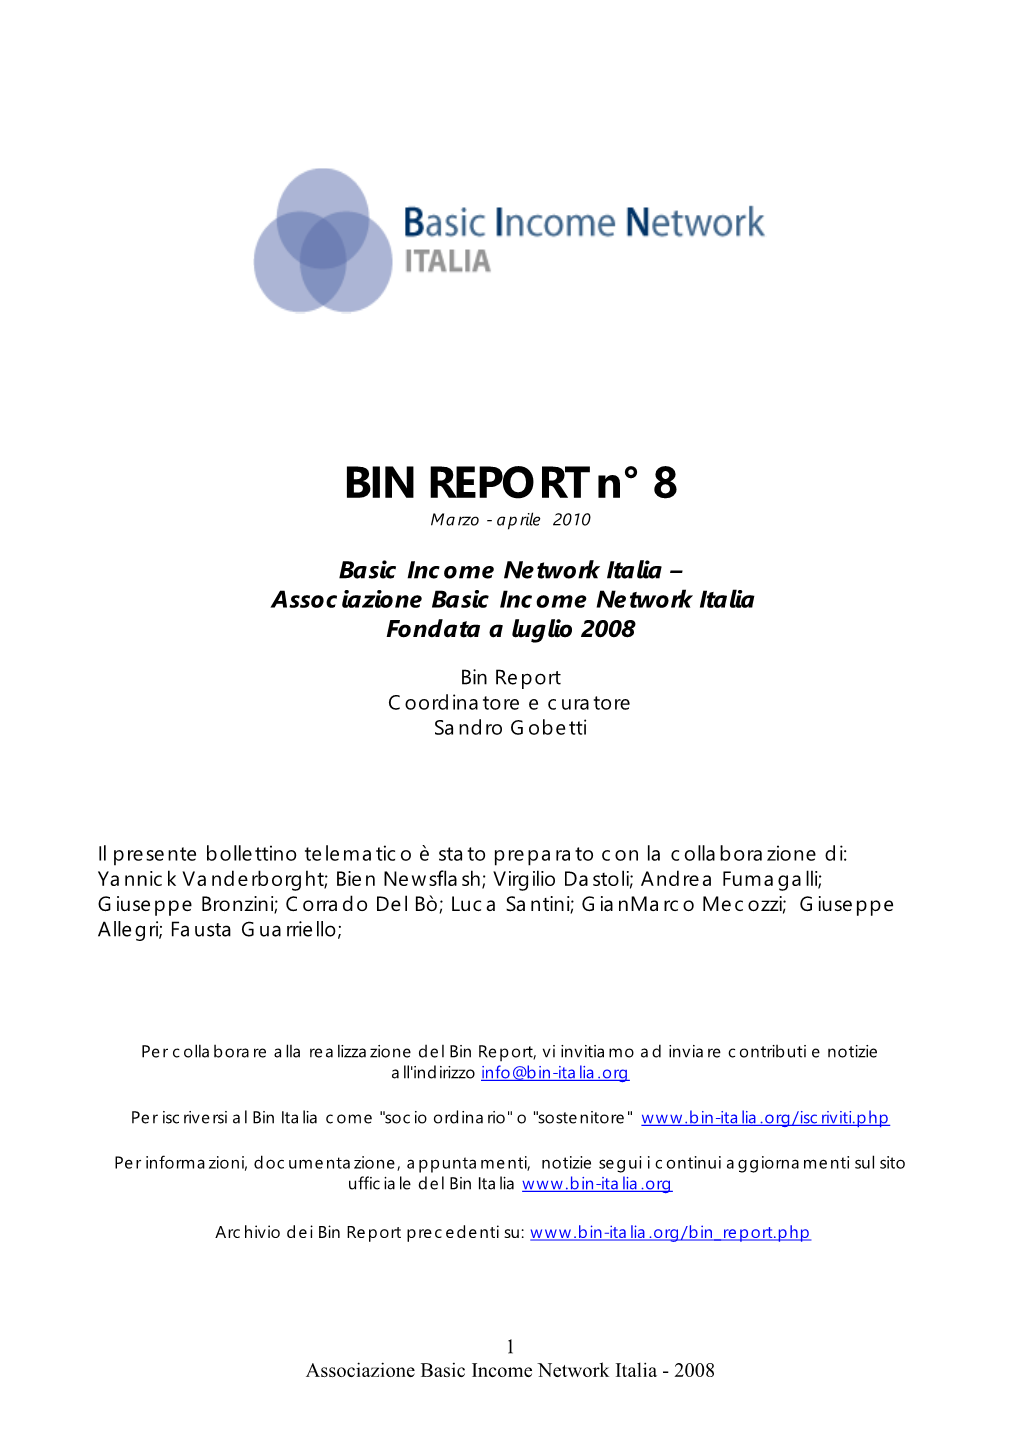 BIN REPORT N° 0